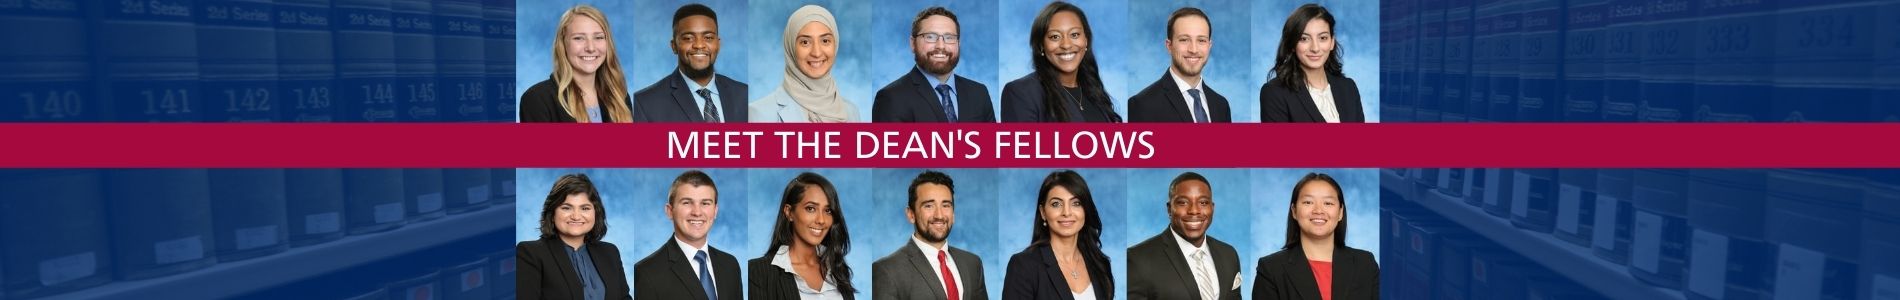 Meet our Dean's Fellows